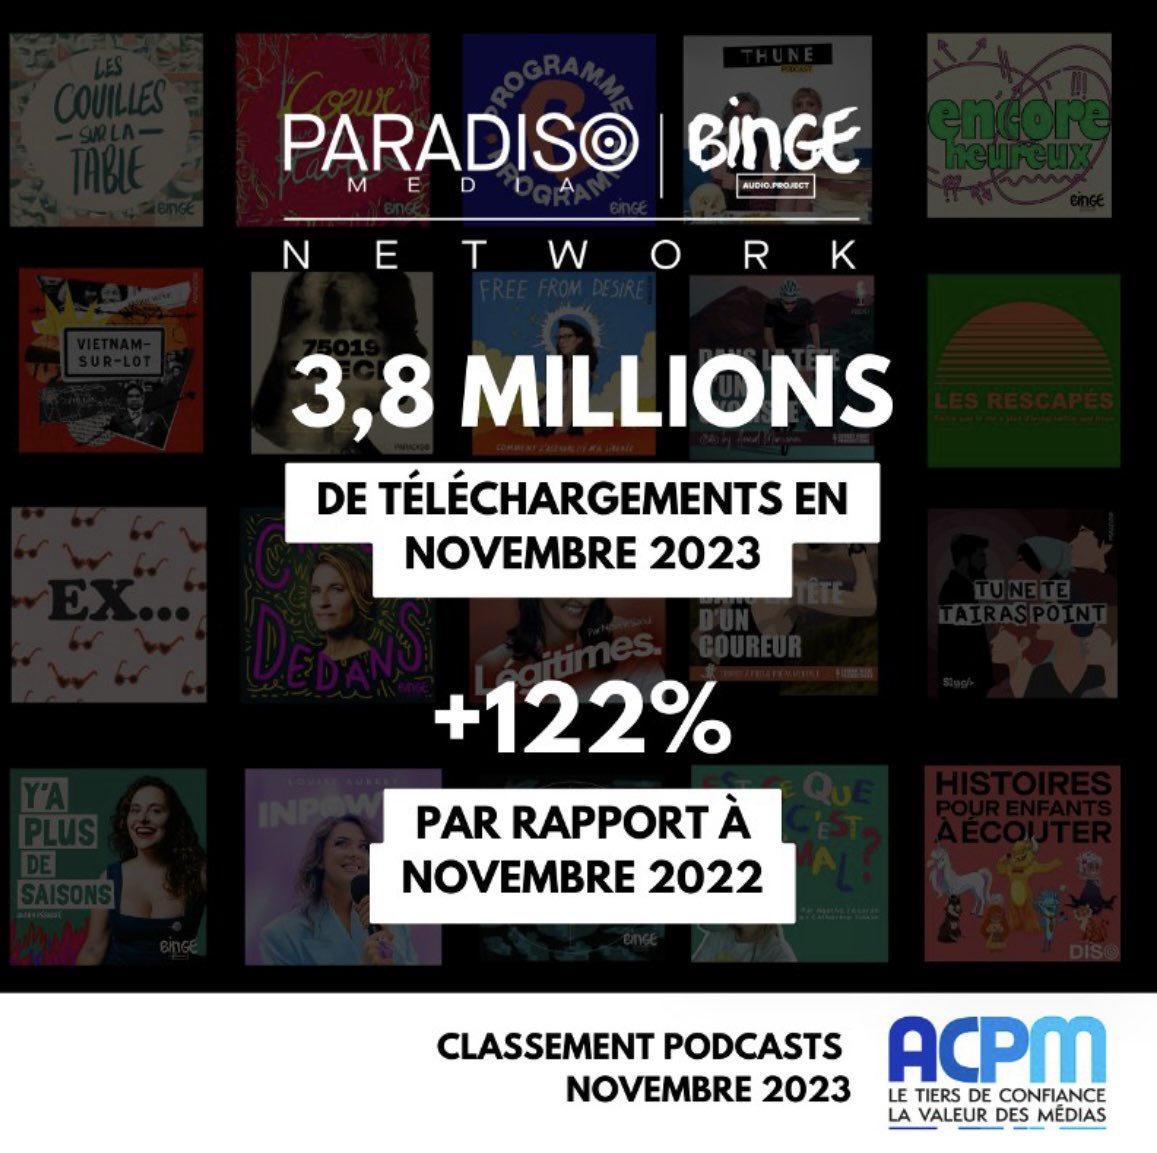 🔥 Avec près de 3,8m de téléchargements en novembre 2023, le groupe Paradiso Media BINGE AUDIO devient le 1er réseau de podcasts natifs en France et le 2ème réseau audio (podcast natif & replay) 💫 Merci à tous les talents du #ParadisoBingeAudioNetwork & tous nos auditeur.ices !